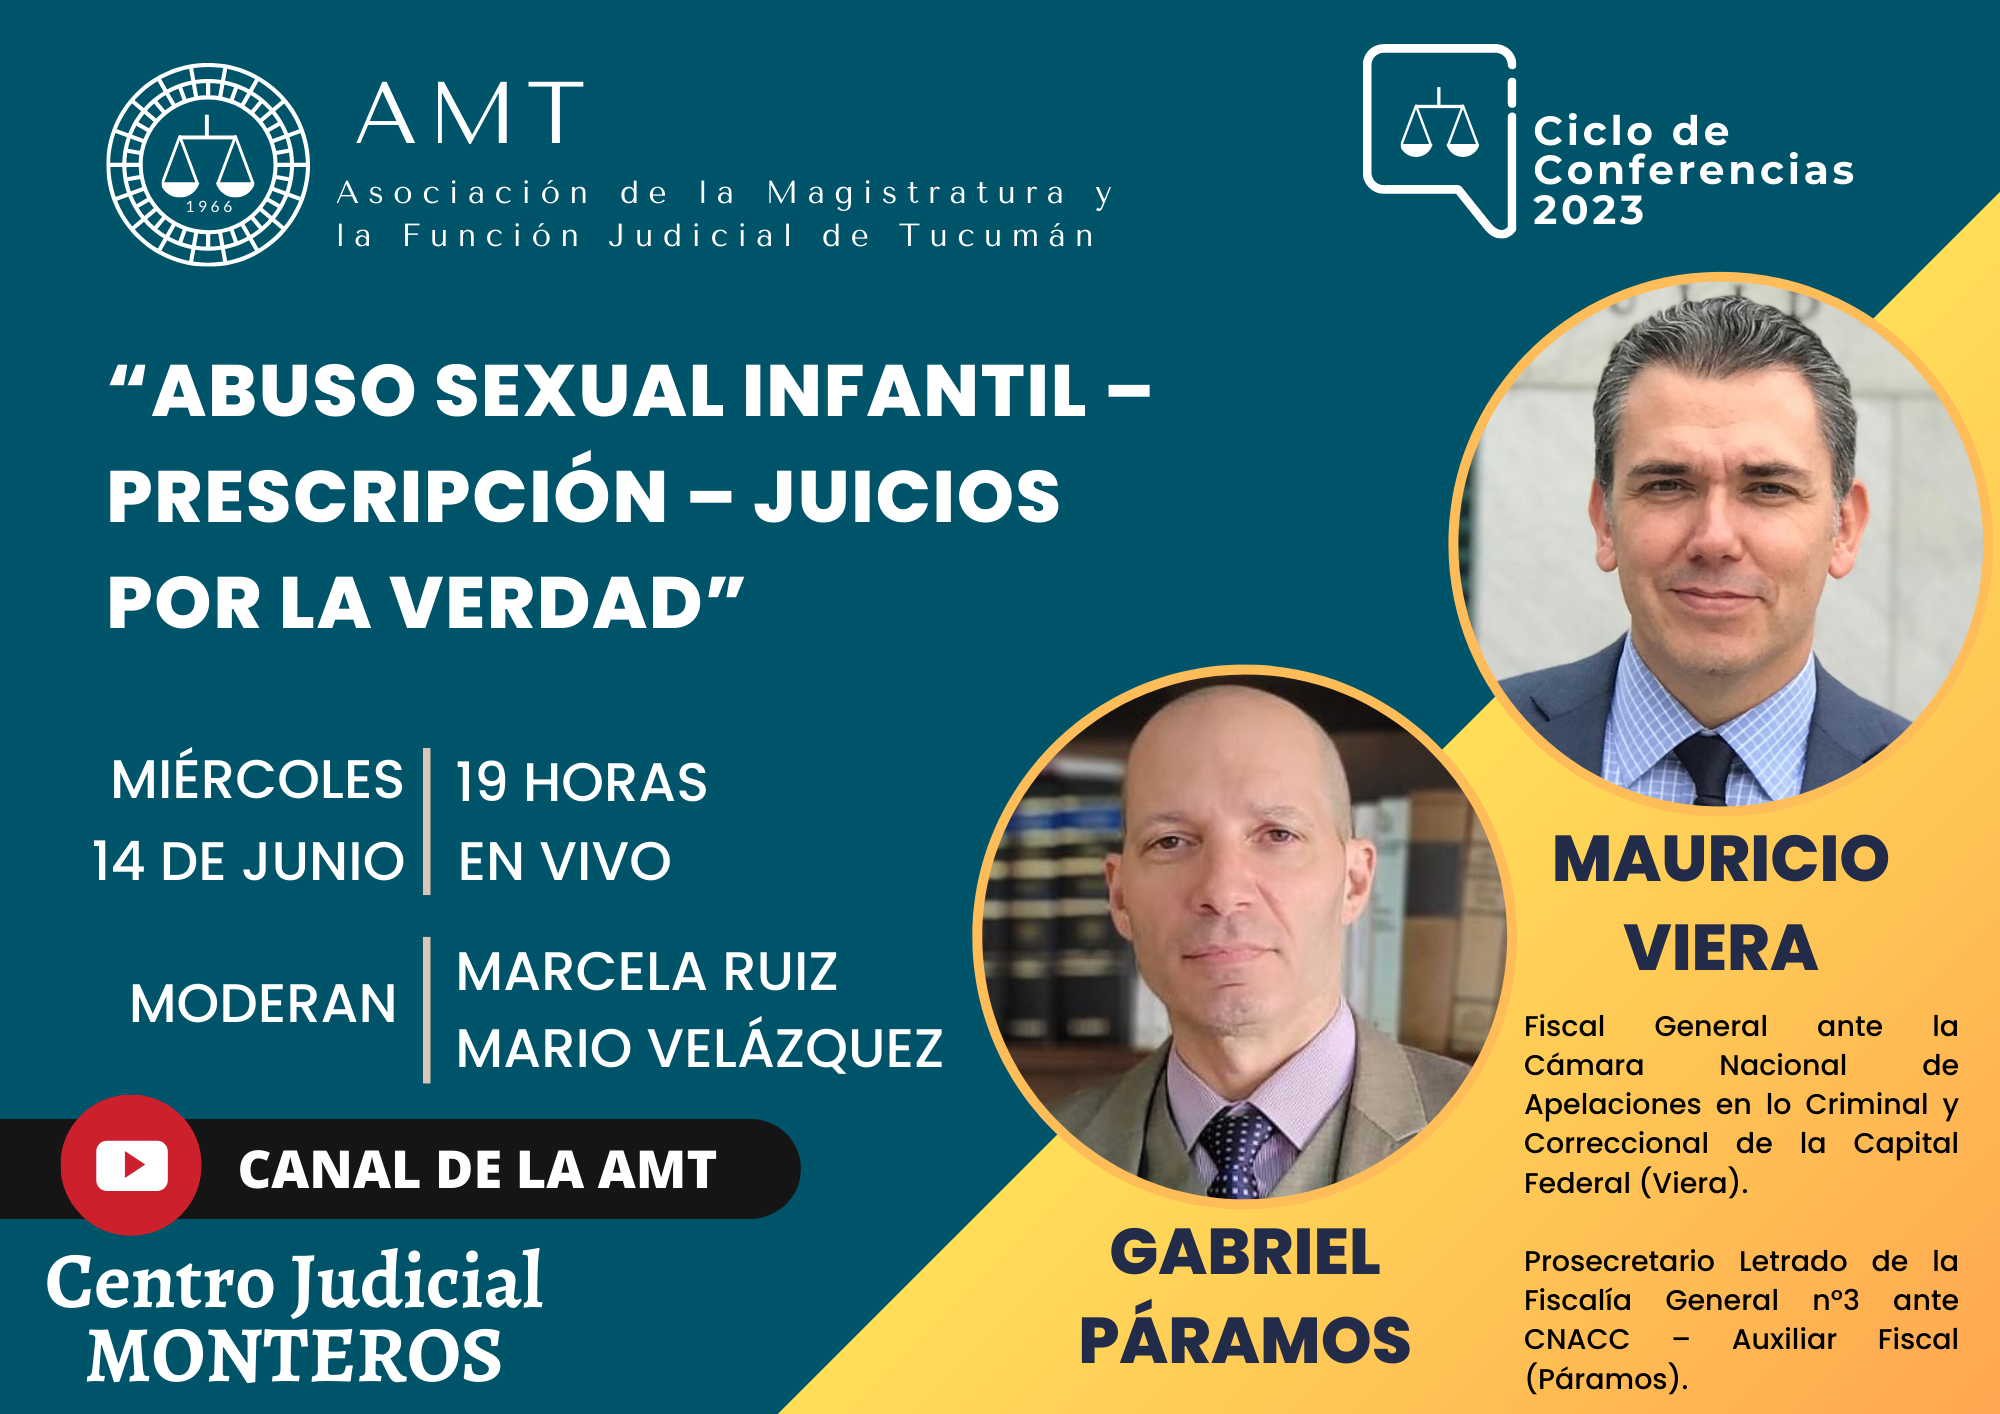 Vuelva a ver la conferencia de Gabriel Páramos y Mauricio Viera: “Abuso sexual infantil – Prescripción – Juicios por la verdad”